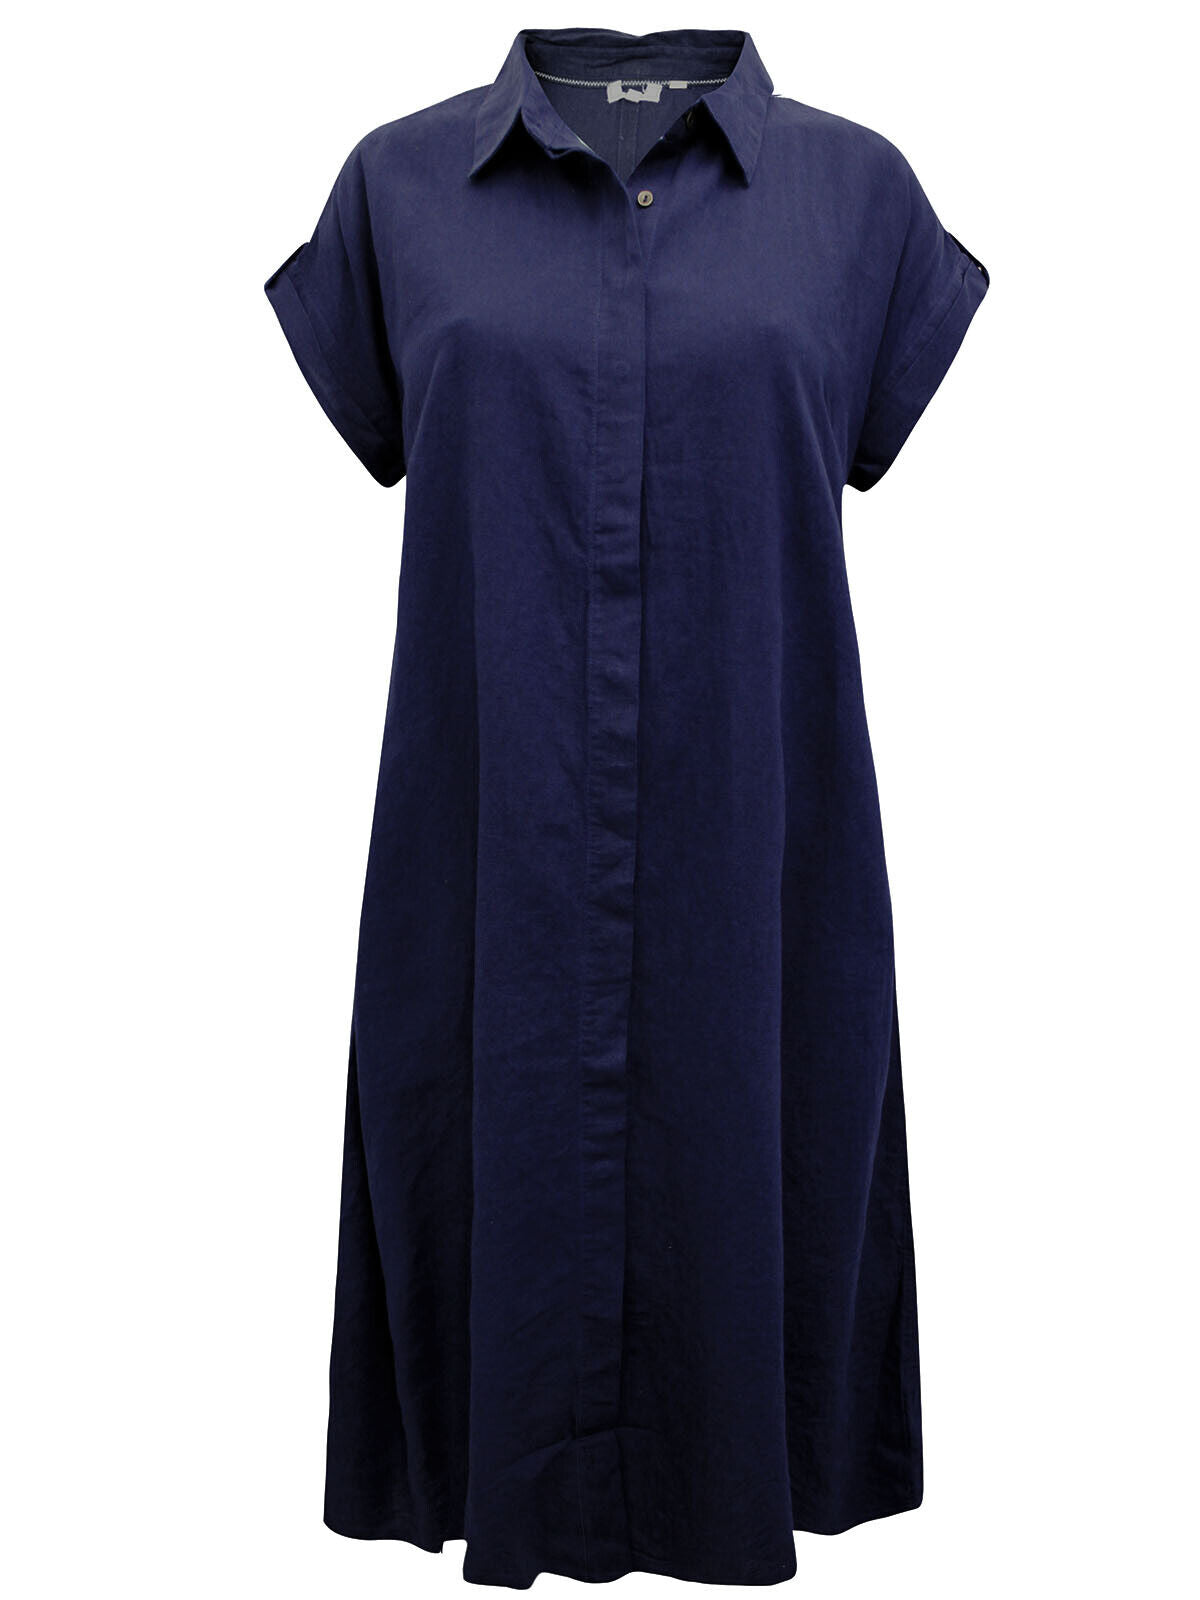 EX Fat Face Indigo Sylvie Linen Blend Shirt Dress in Size 12 NO BELT